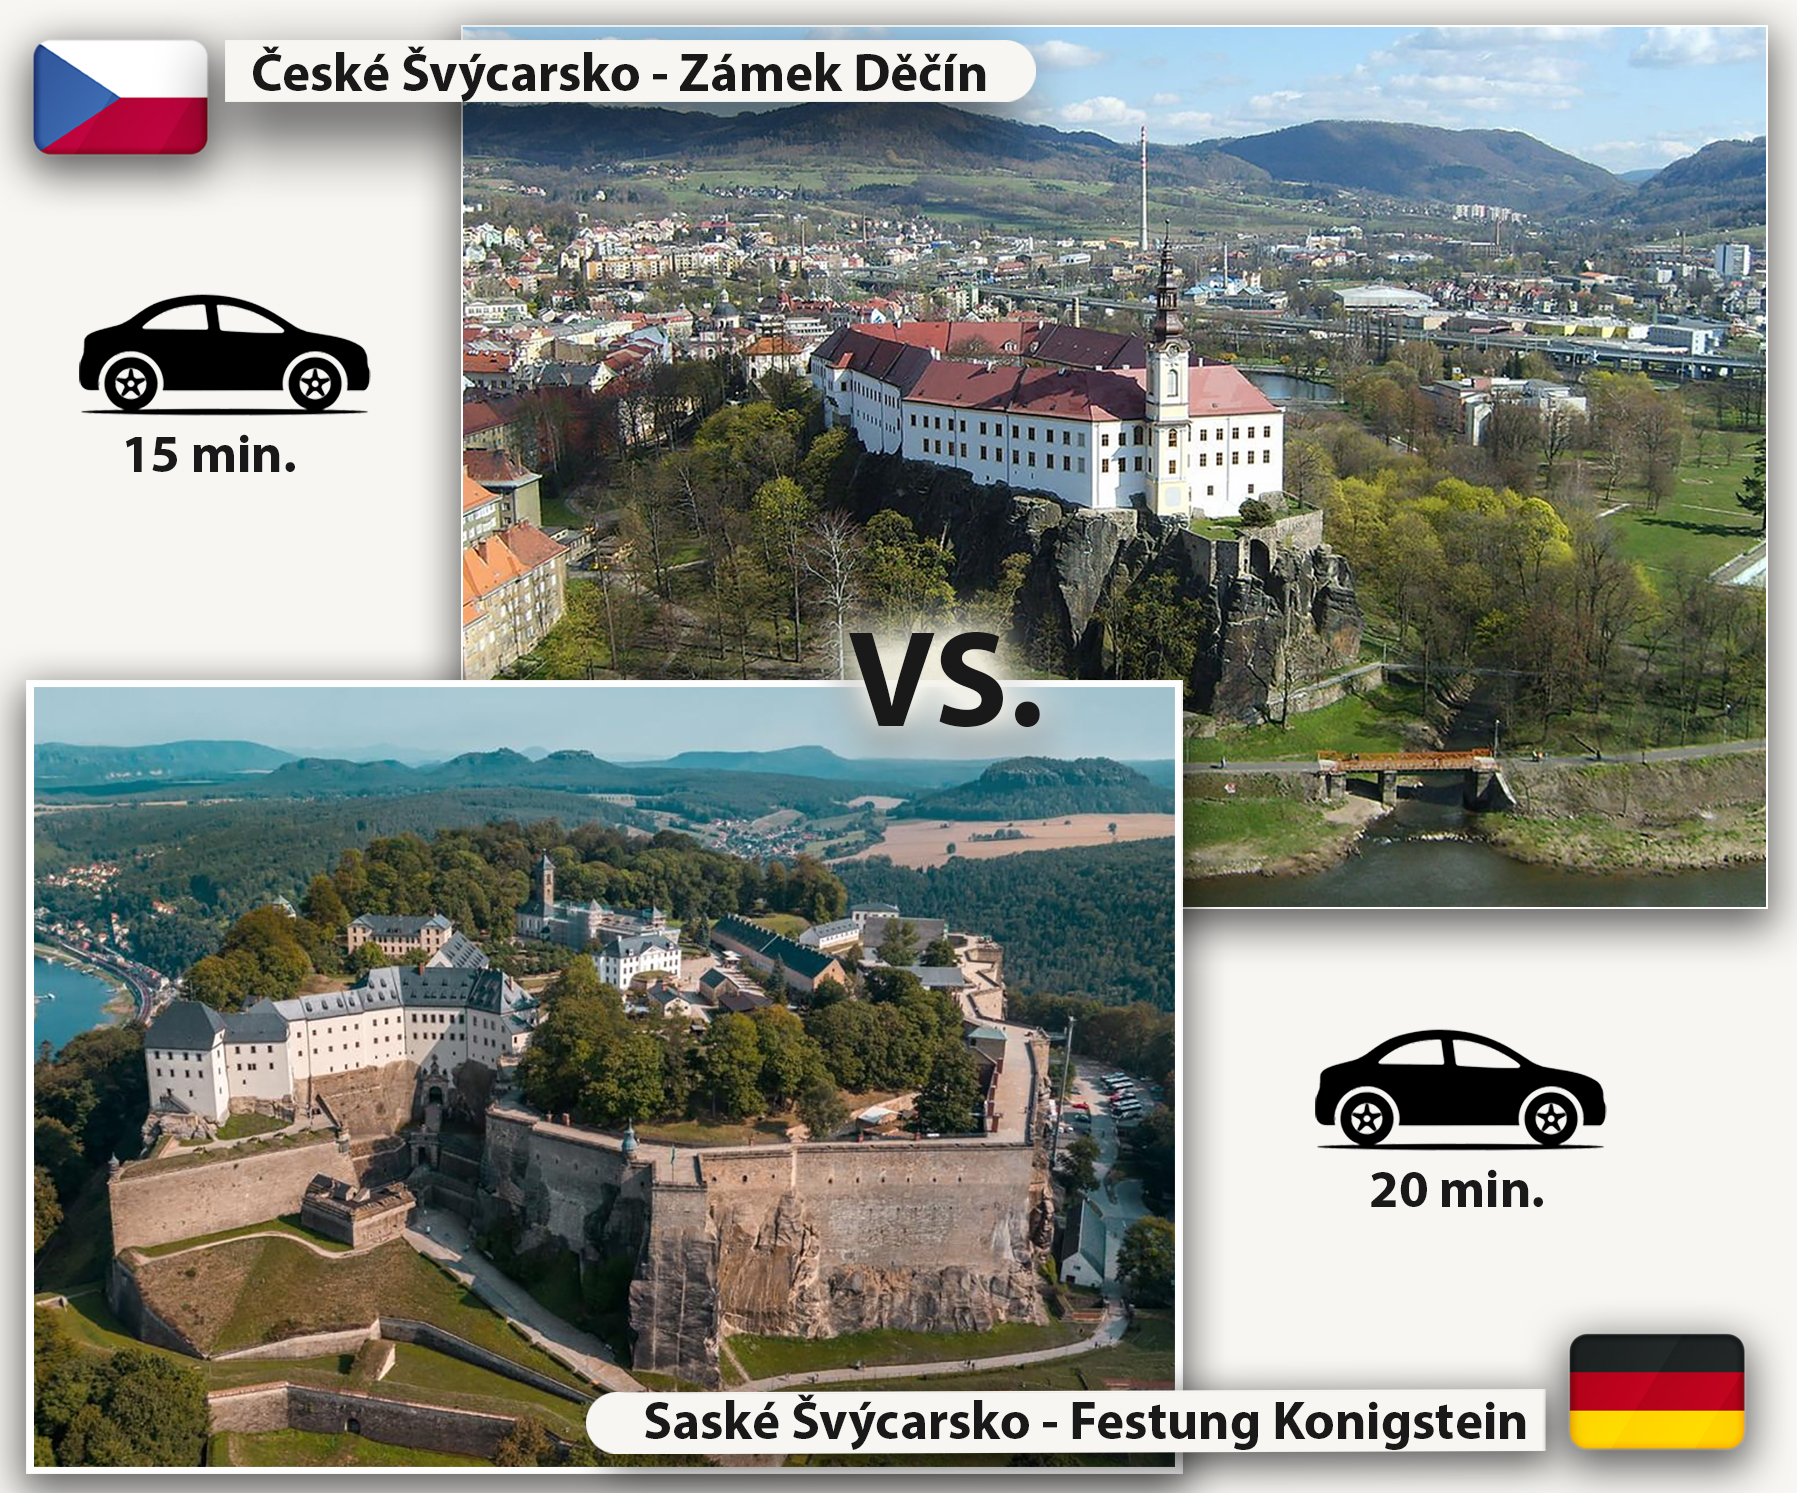 Zámek Děčín vs Festung Königstein